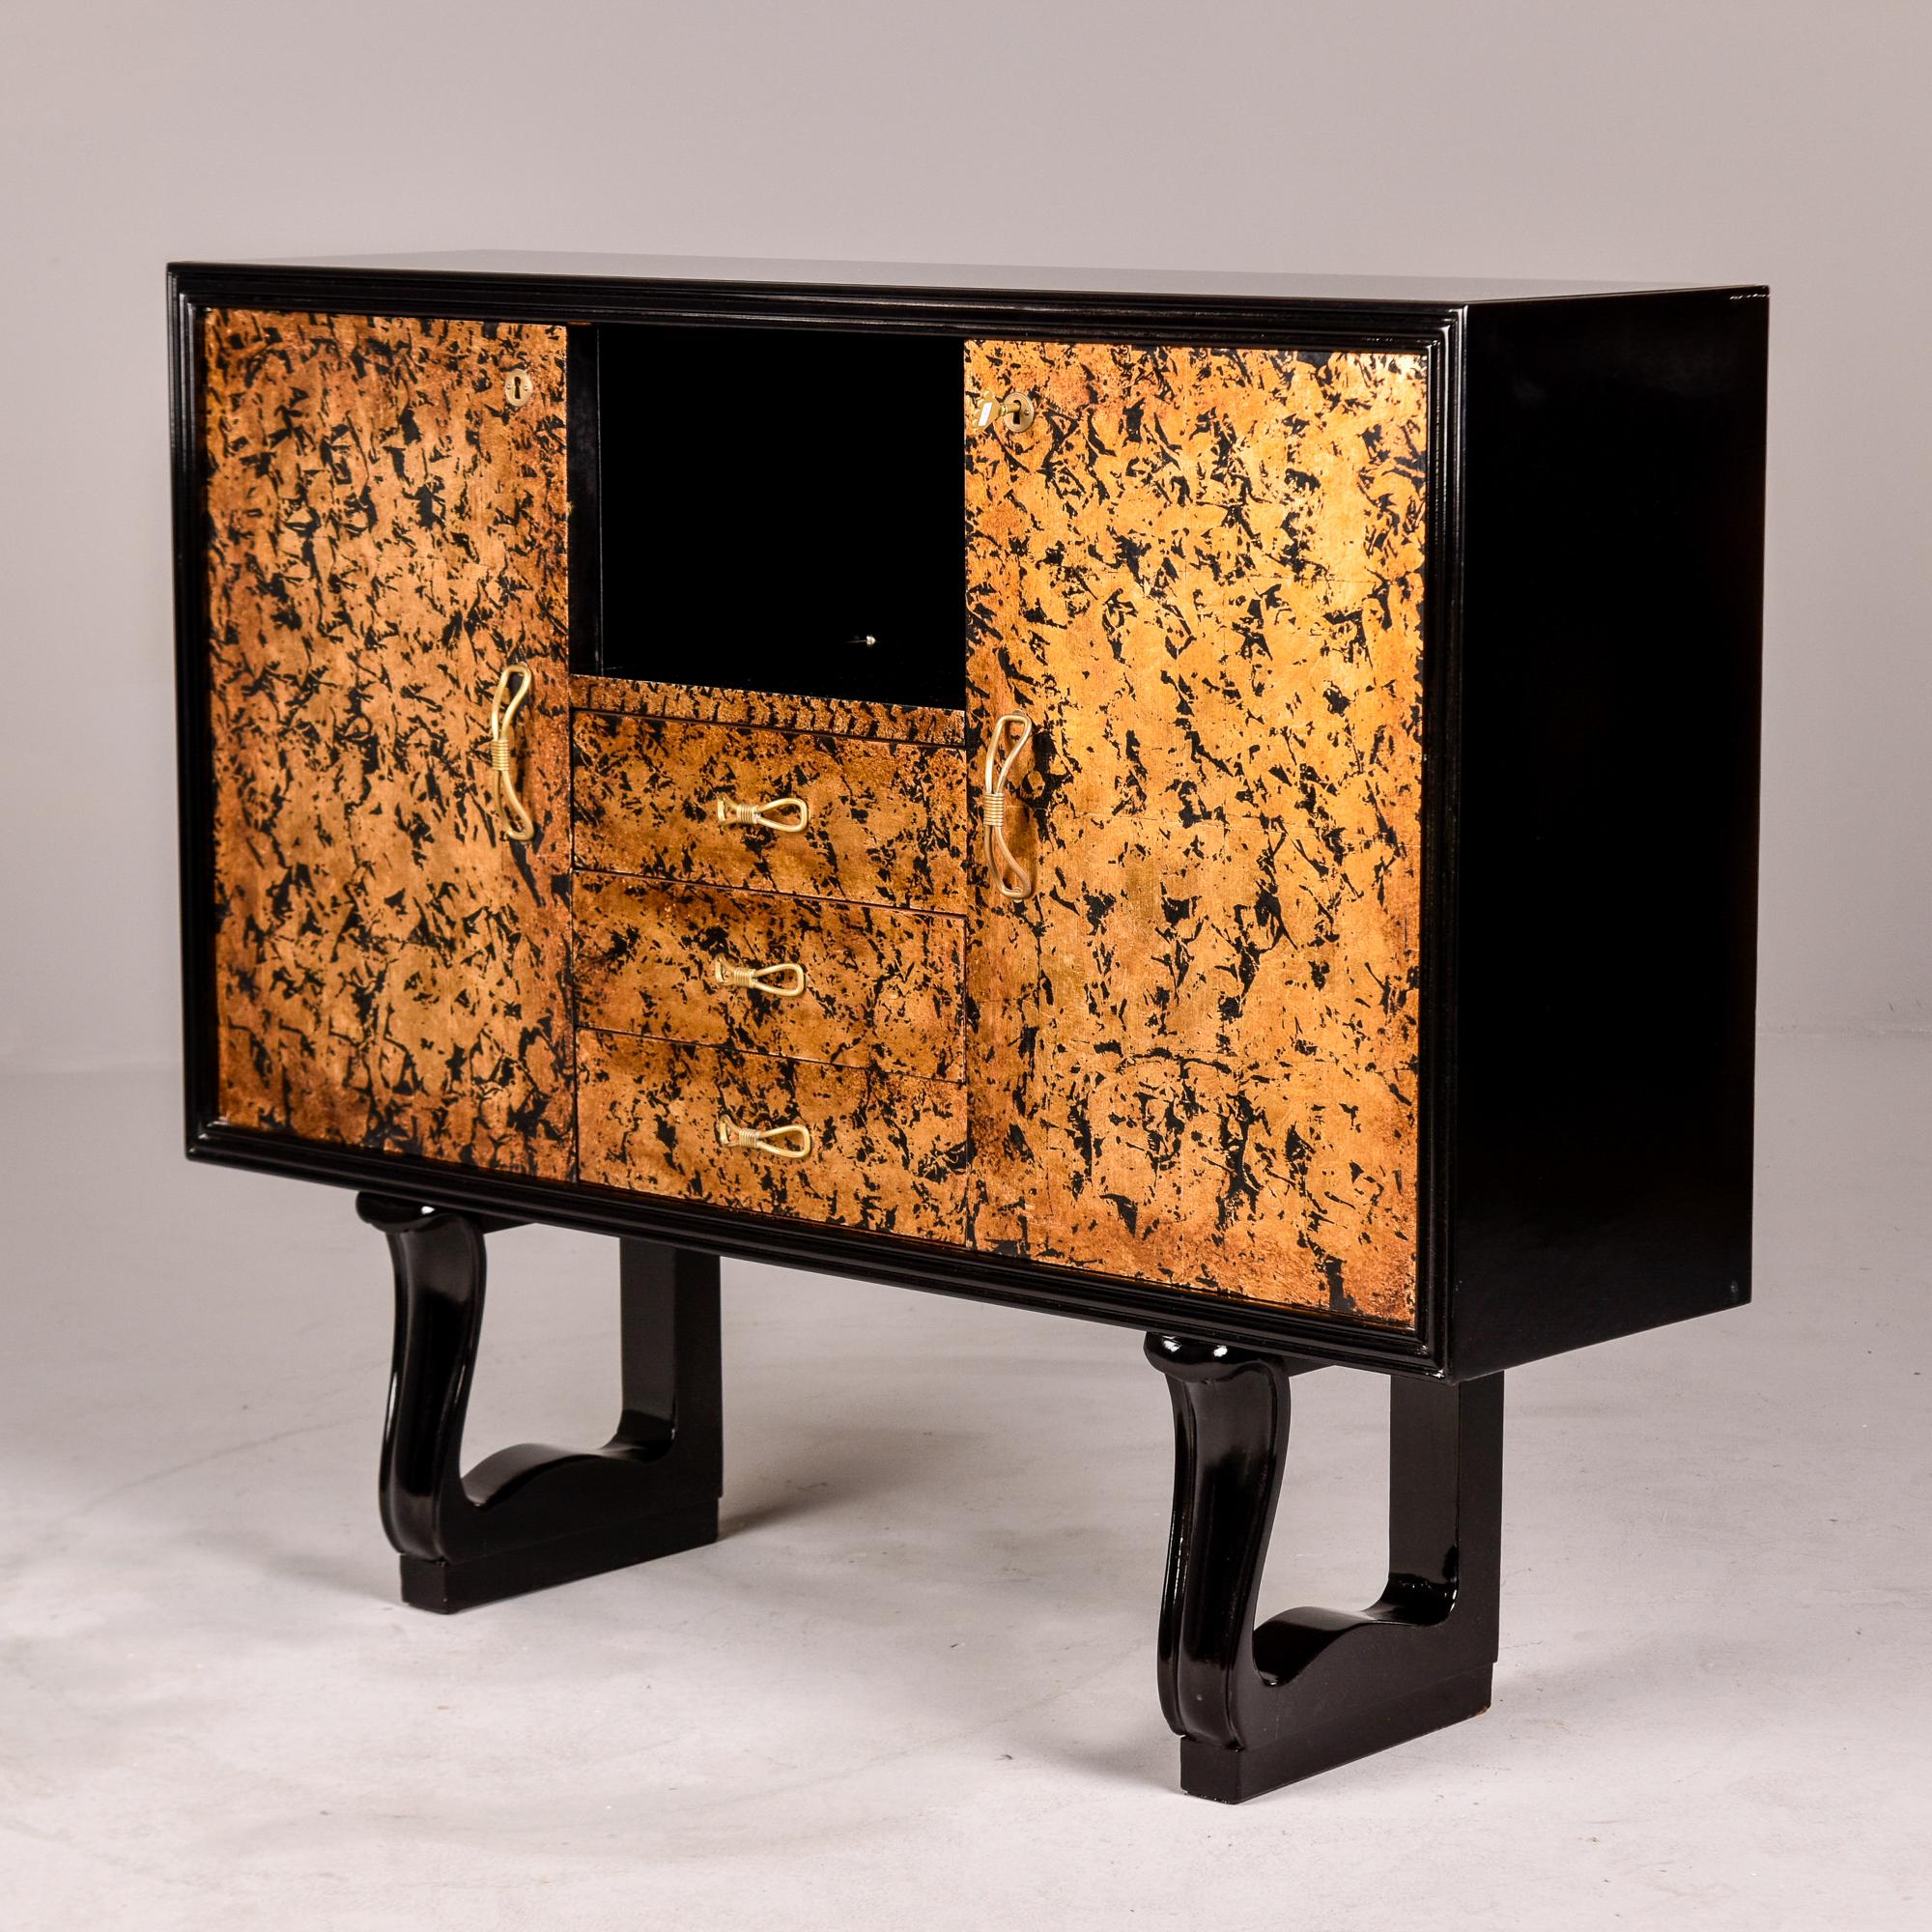 Trouvé en Italie, ce cabinet Art déco inhabituel date des années 1940. Le dessus, les côtés et la base du meuble sont ébonisés et la façade présente un motif unique de dorure et d'ébène en forme de feuille. L'armoire comporte deux armoires latérales